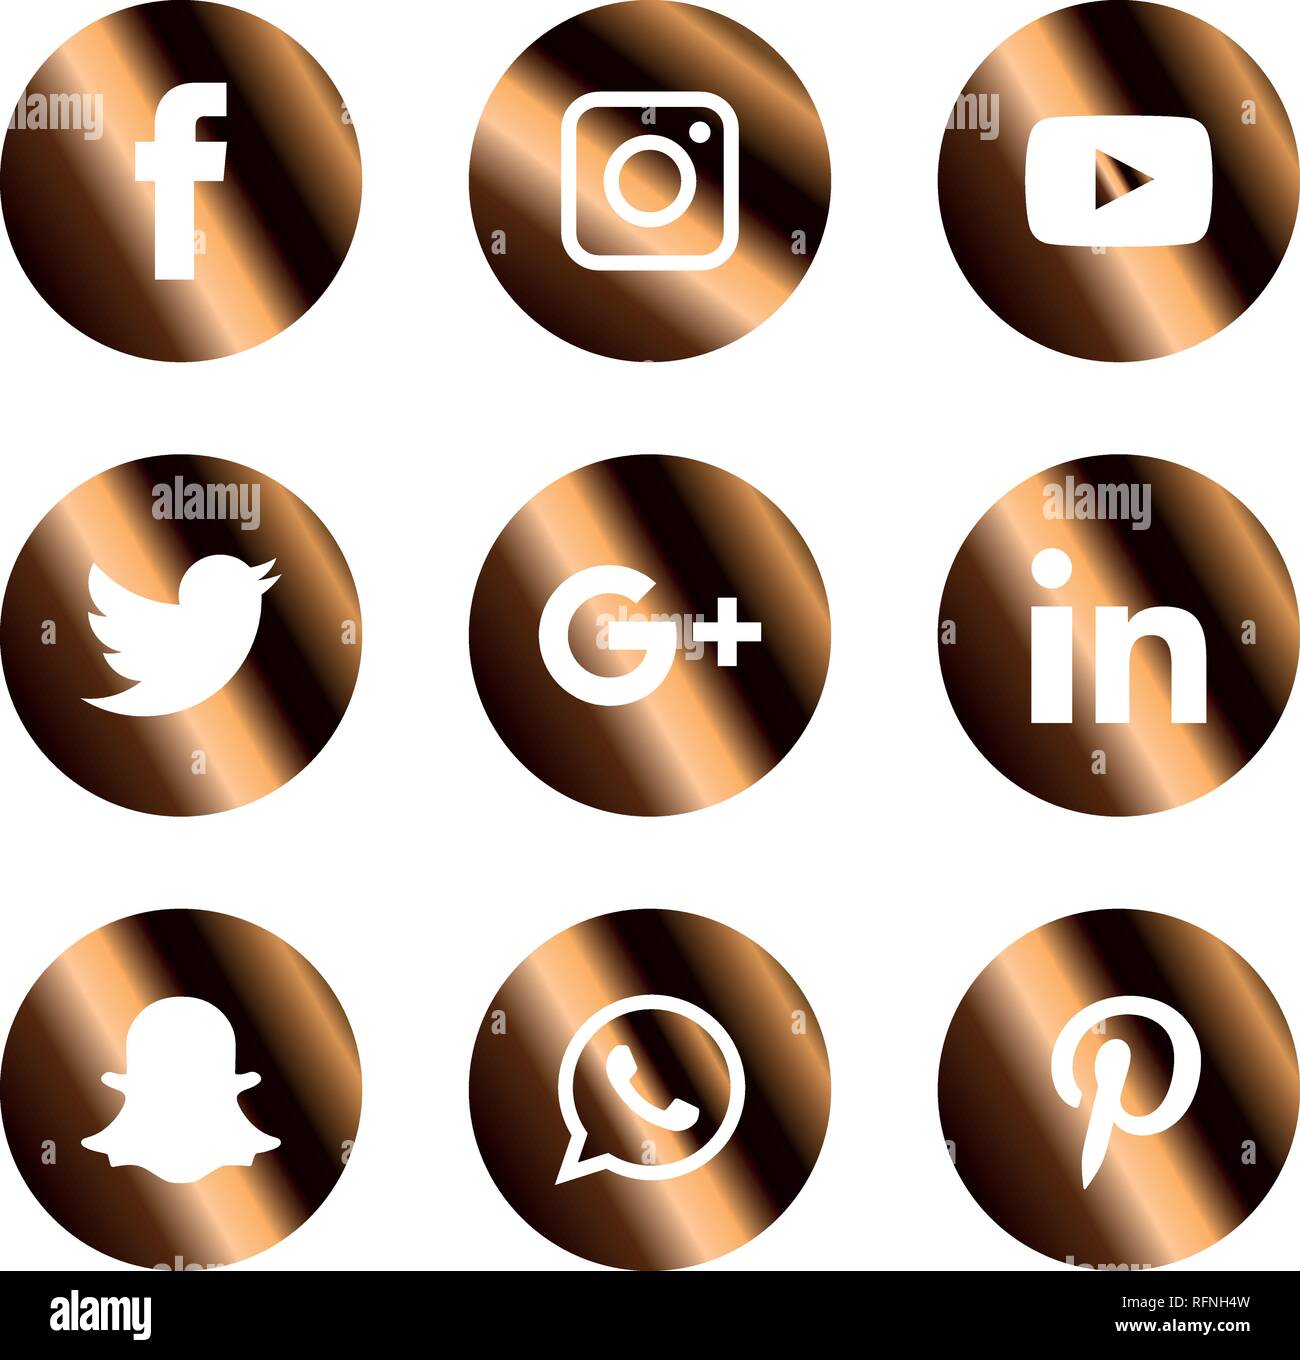 Social media icons set Logo Vector Illustrator facebook, instagram,  twitter, whatsapp, google plus, google+, pinterest, linkedin, messenger  Stock Vector Image & Art - Alamy